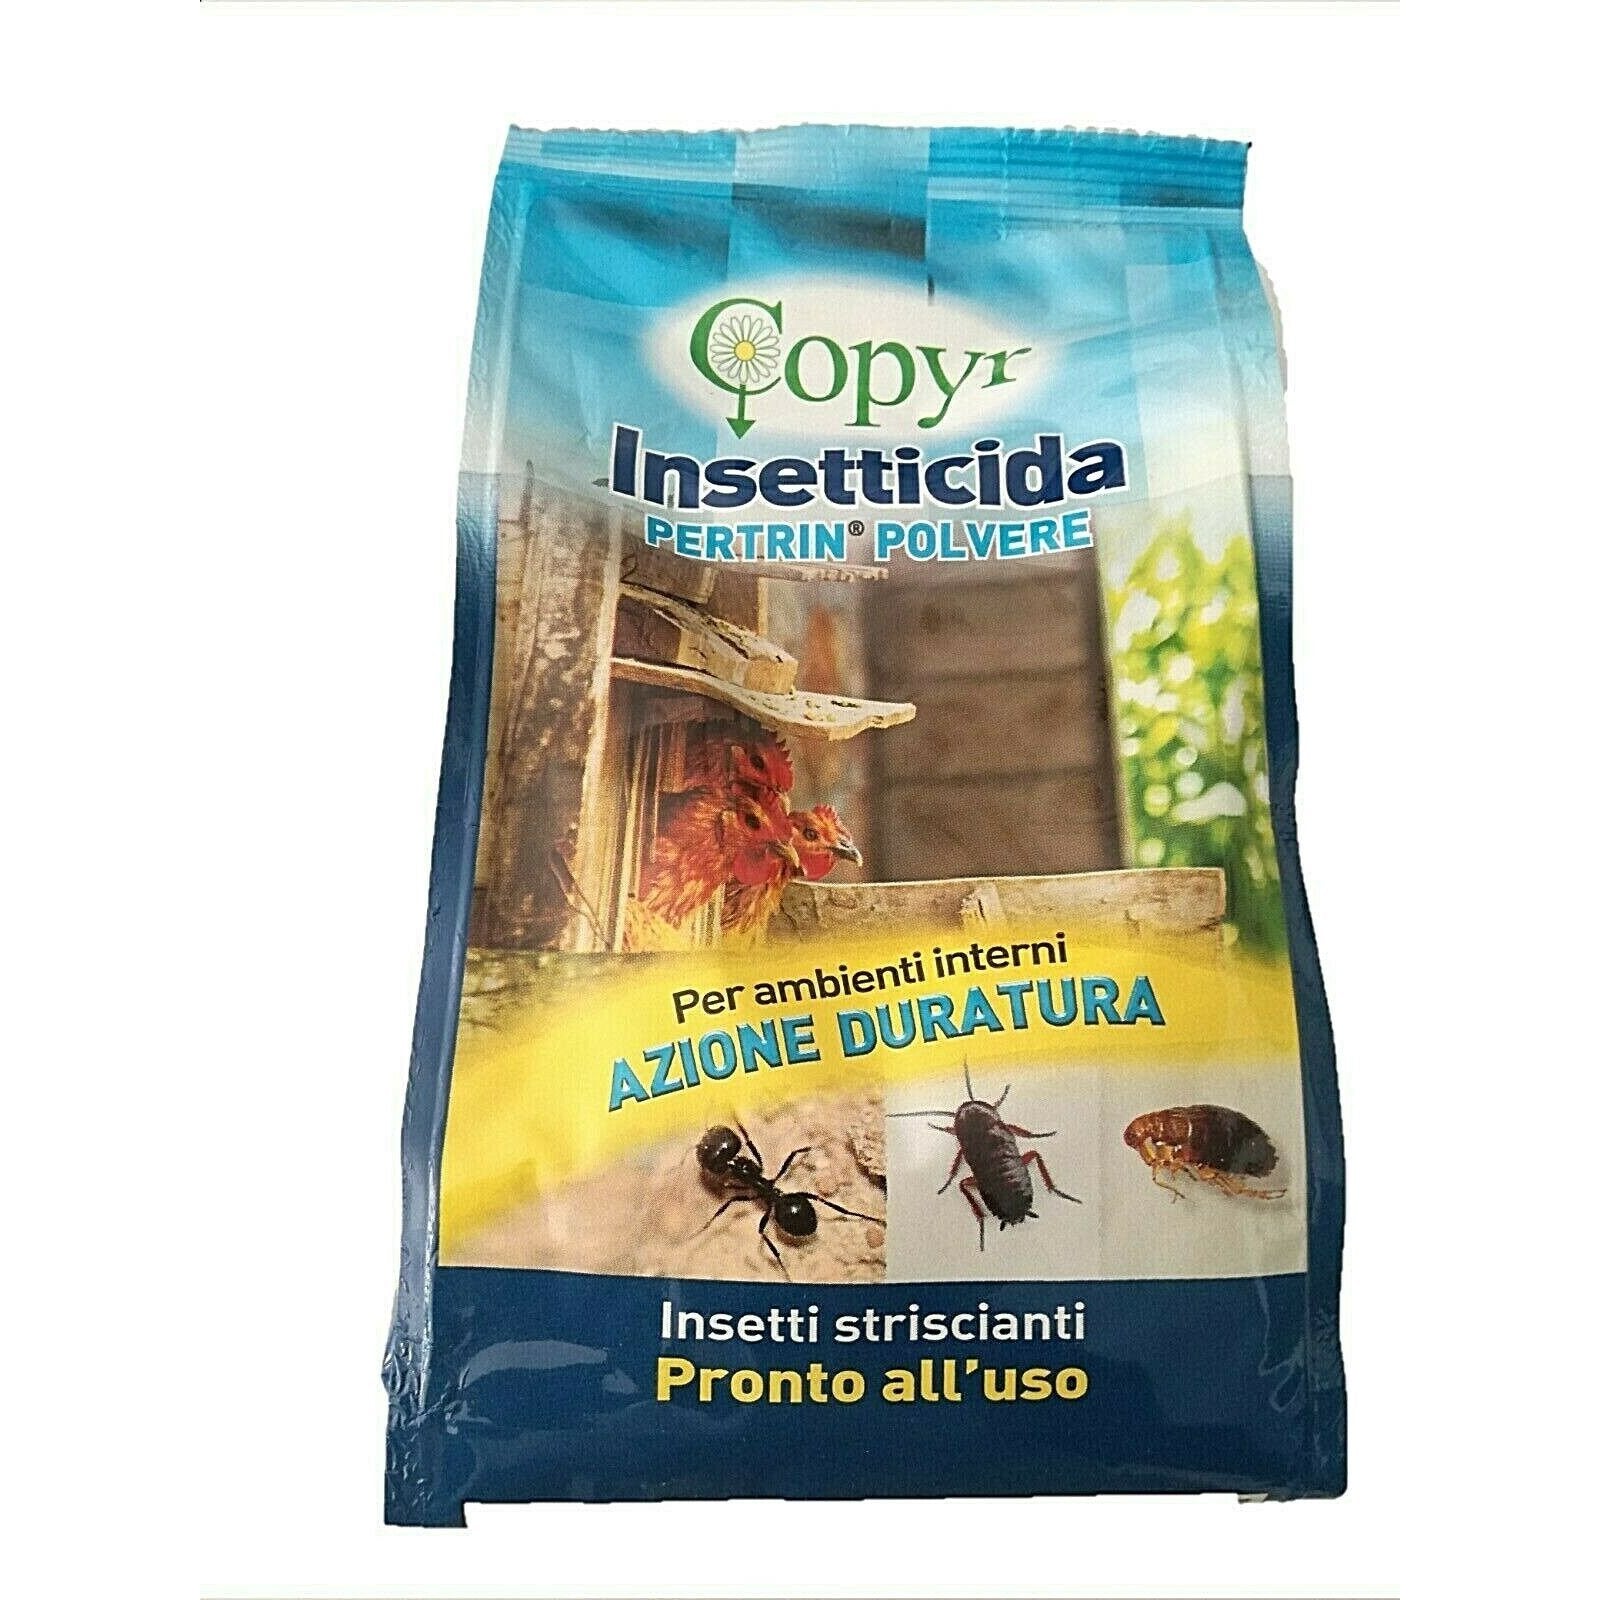 Insetticida per formiche COPYR insetticidi in polvere kg1 e insetti striscianti -Ecanshop